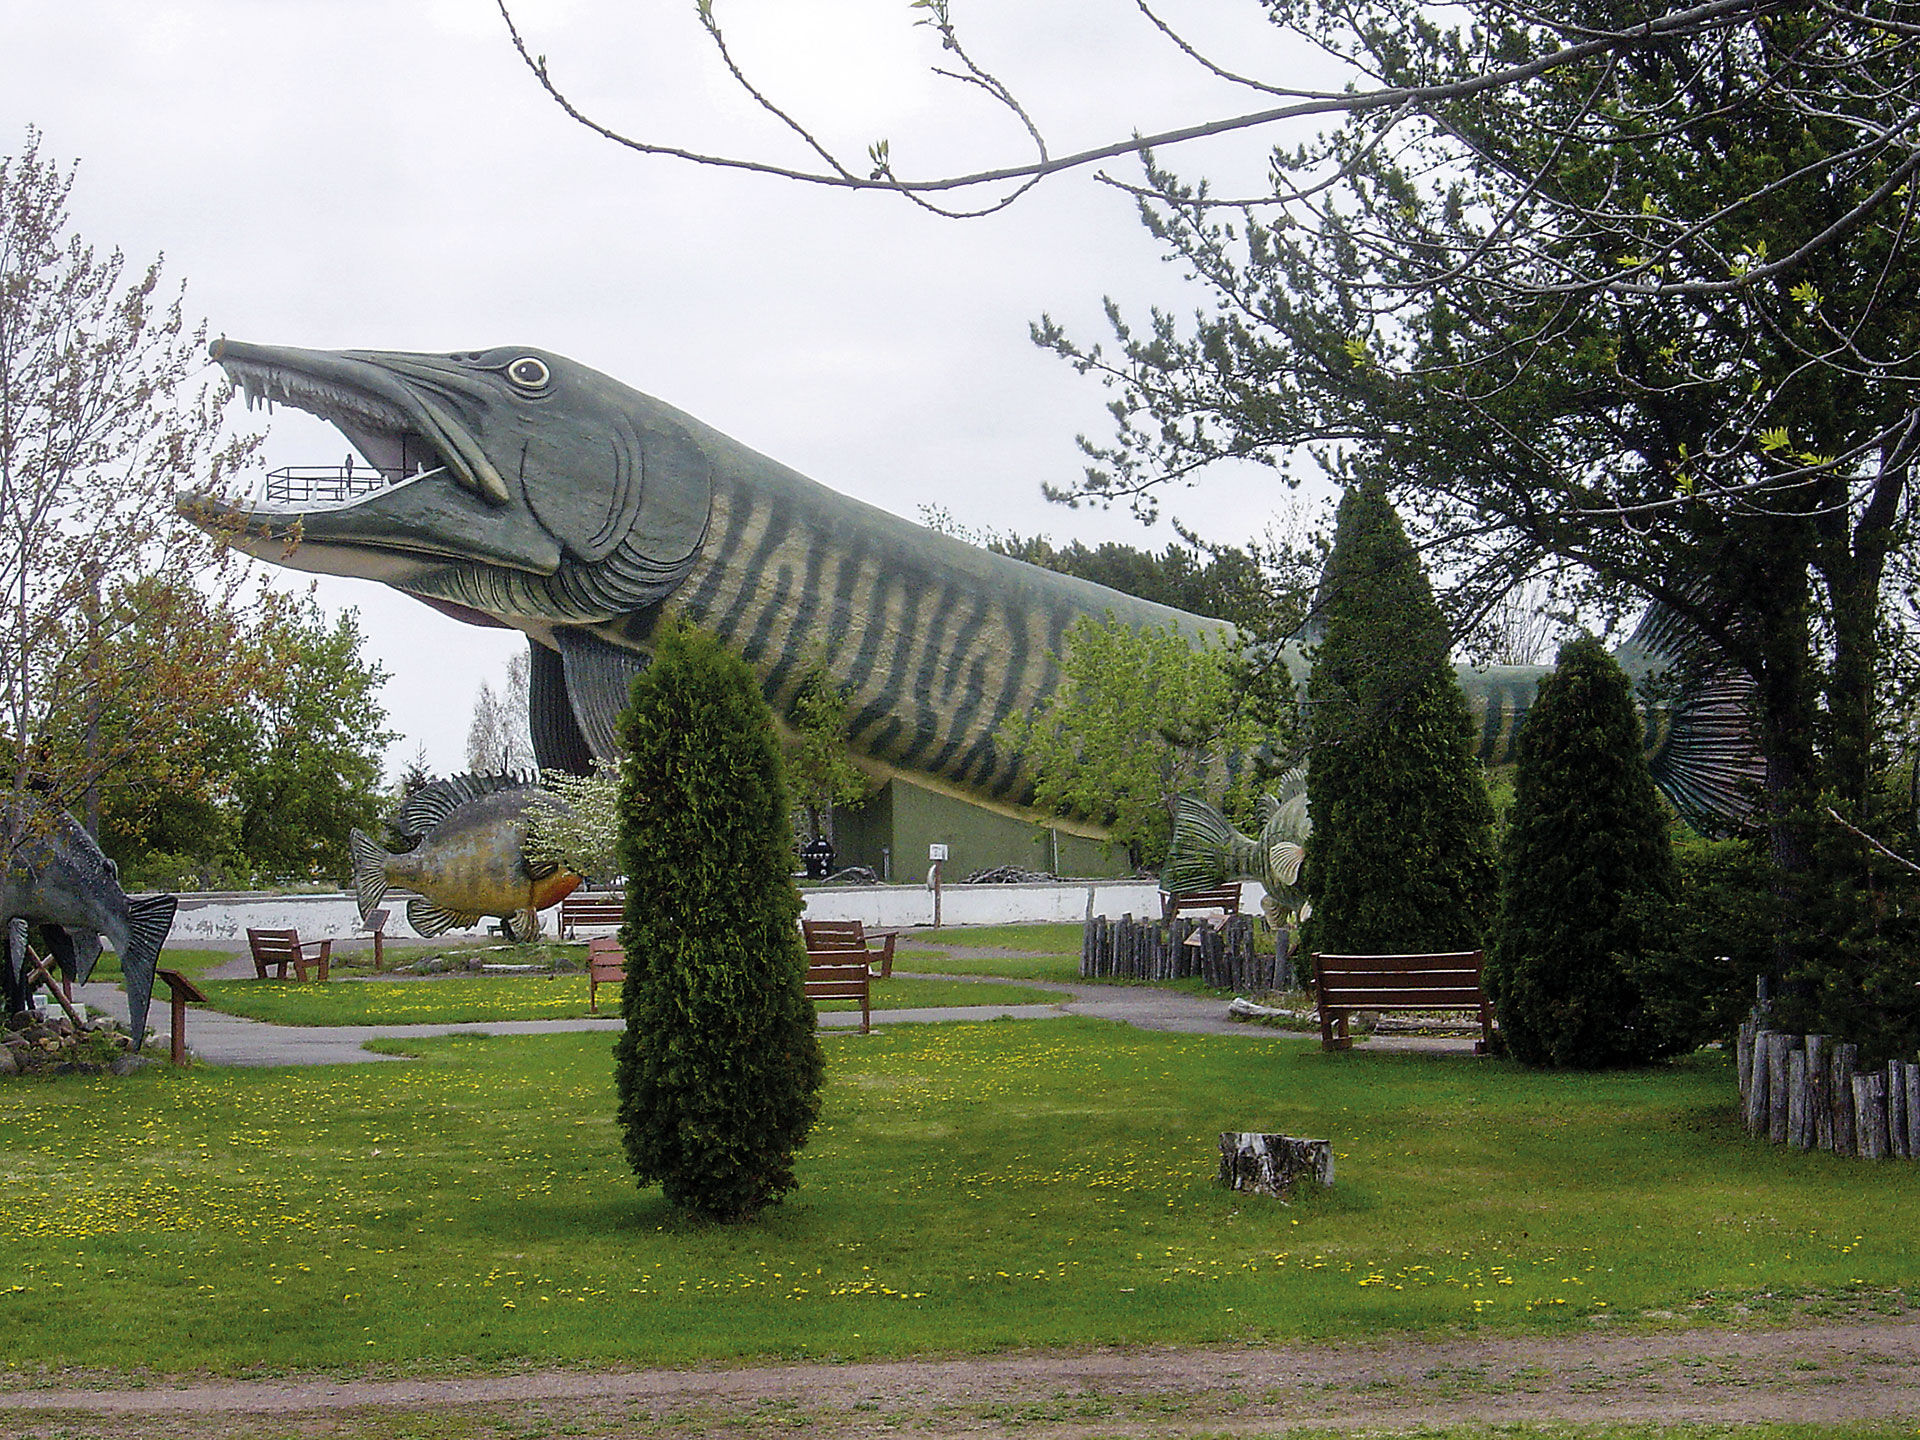  In den USA gibt es mehrere Museen, die sich einzig der Sportfischerei widmen. Die «Freshwater Fishing Hall of Fame» in einem kleinen Kaff im Bundesstaat Wisconsin zählt um die 100'000 Besucher pro Jahr.   